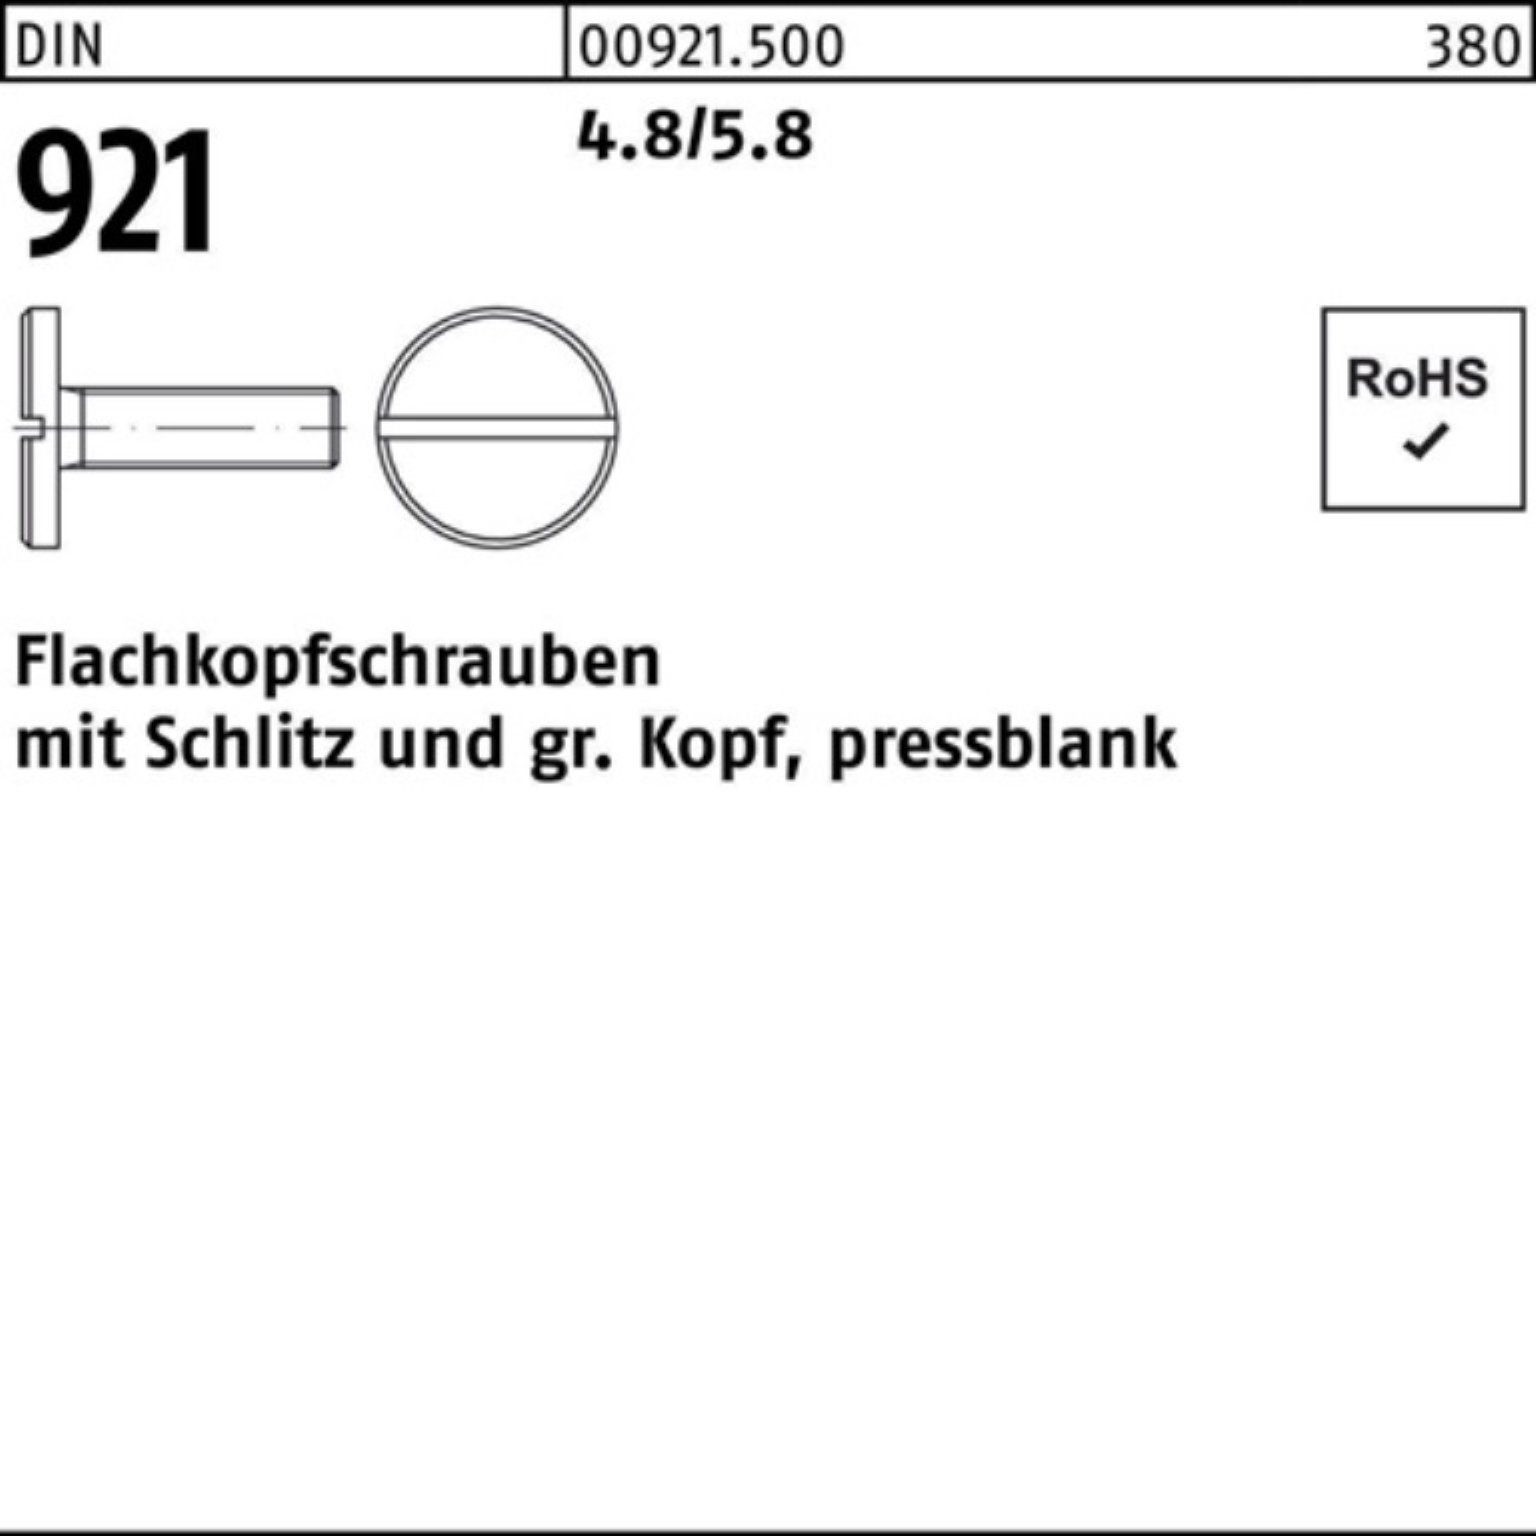 Reyher Schraube 100er Pack Flachkopfschraube DIN 921 Schlitz M4x 6 4.8/5.8 100 Stück